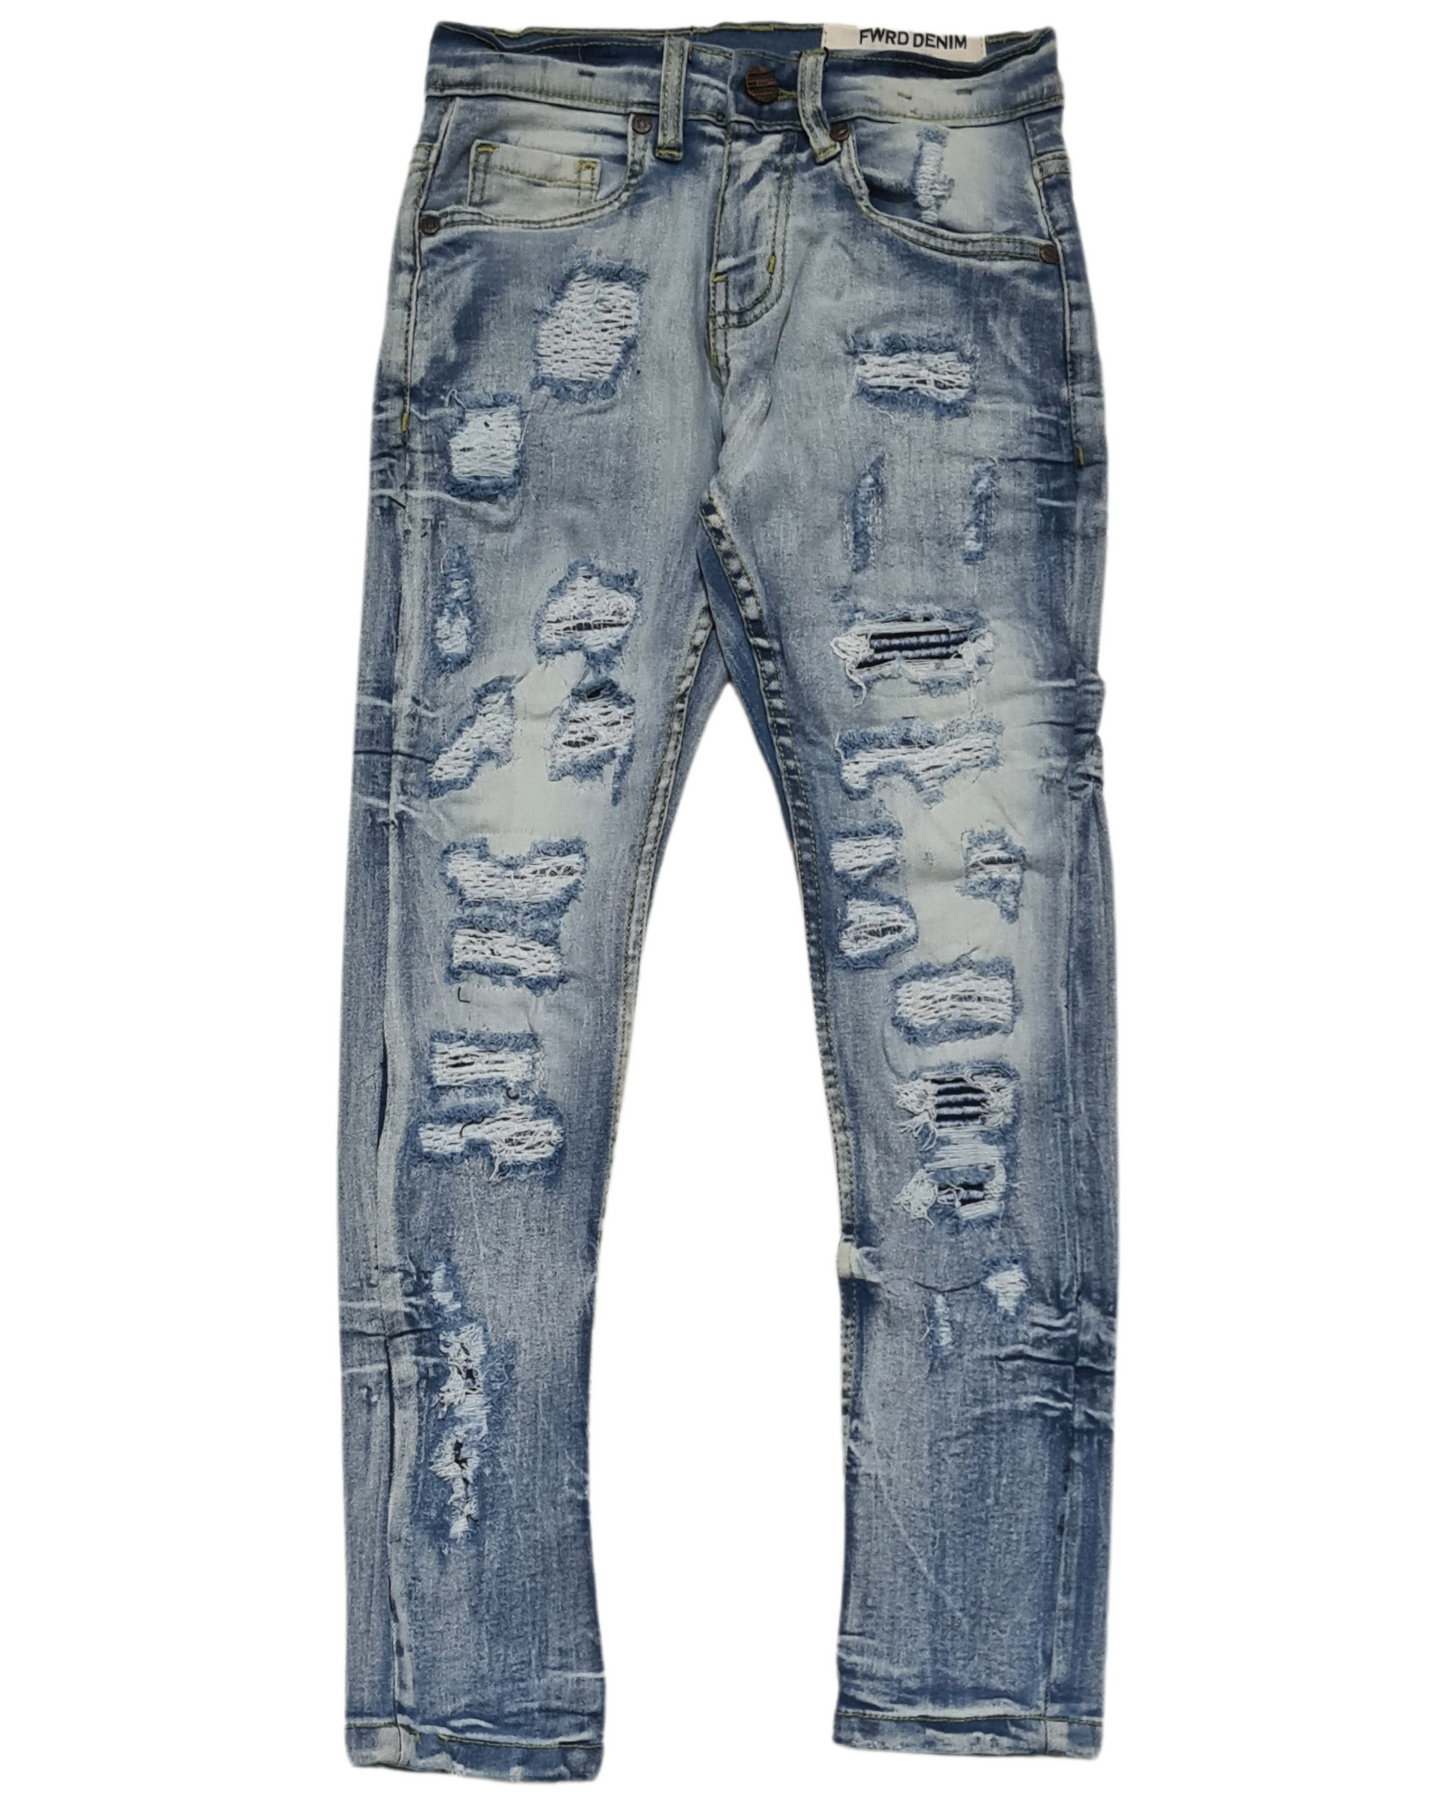 Kids Slim Fit Jeans 33705